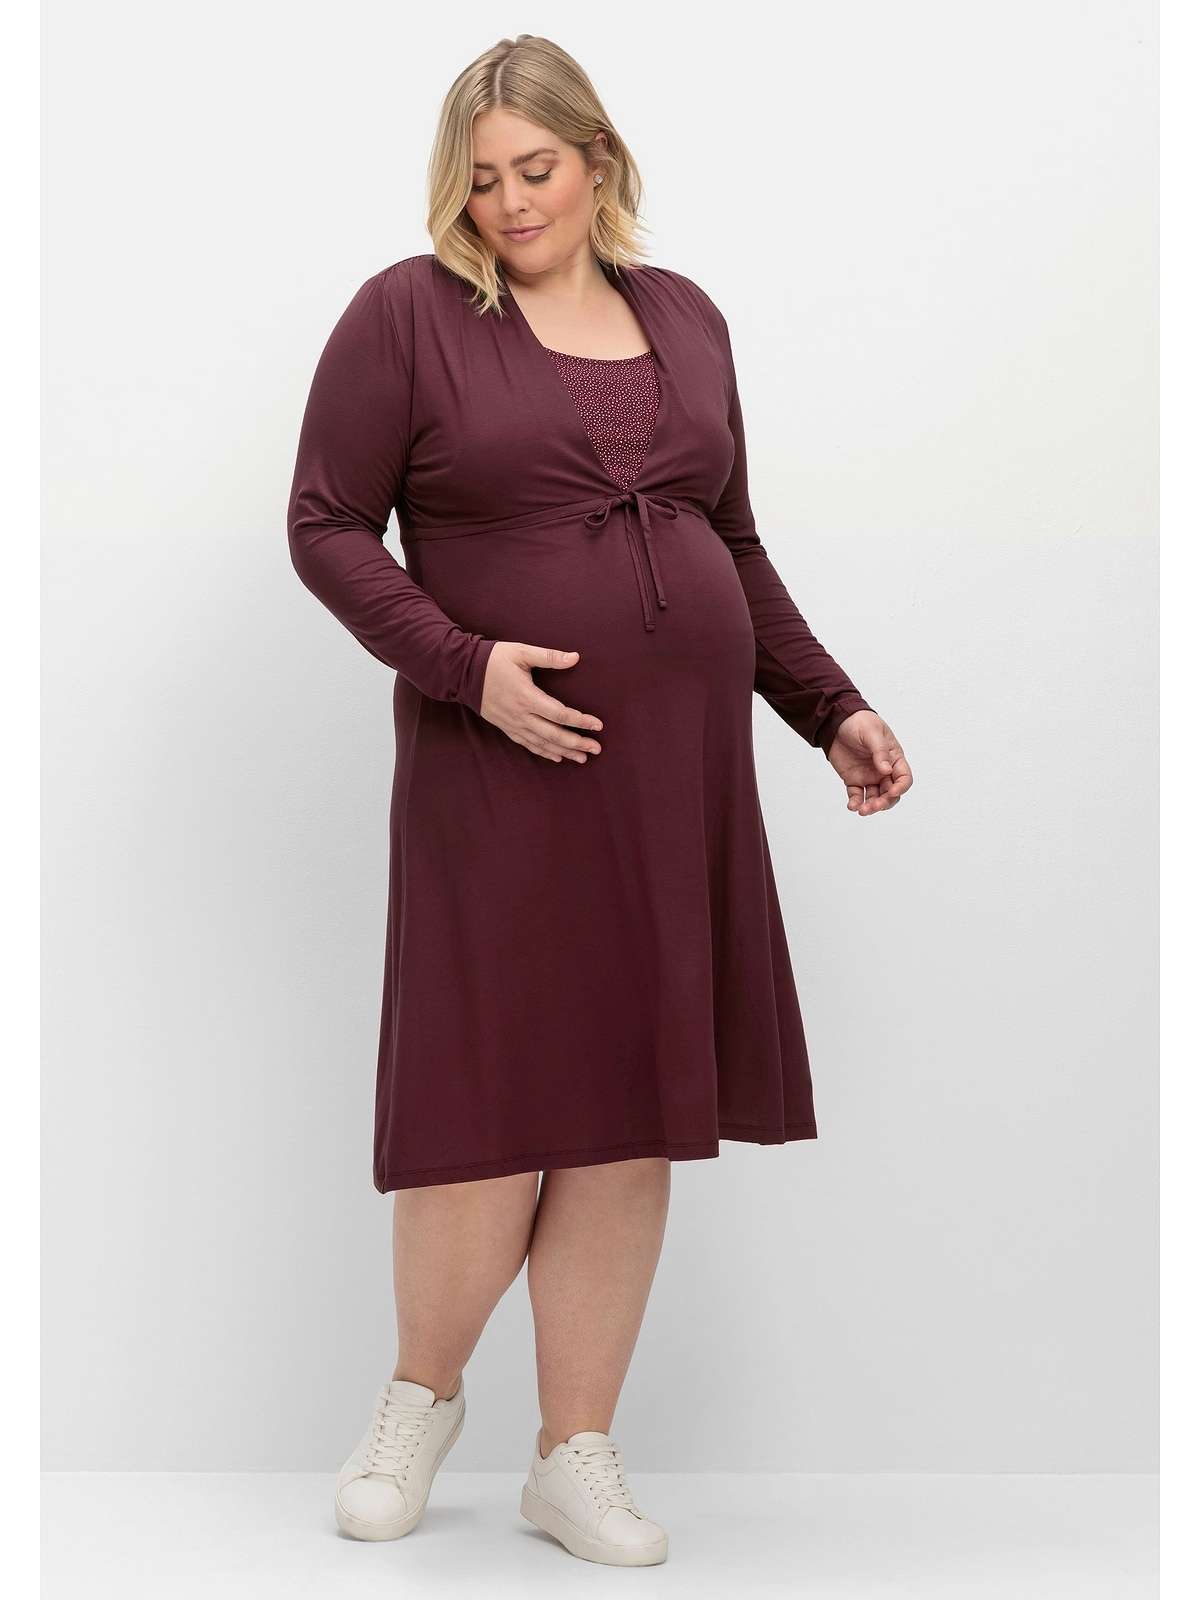 Платье для беременных со встроенной вставкой для кормления